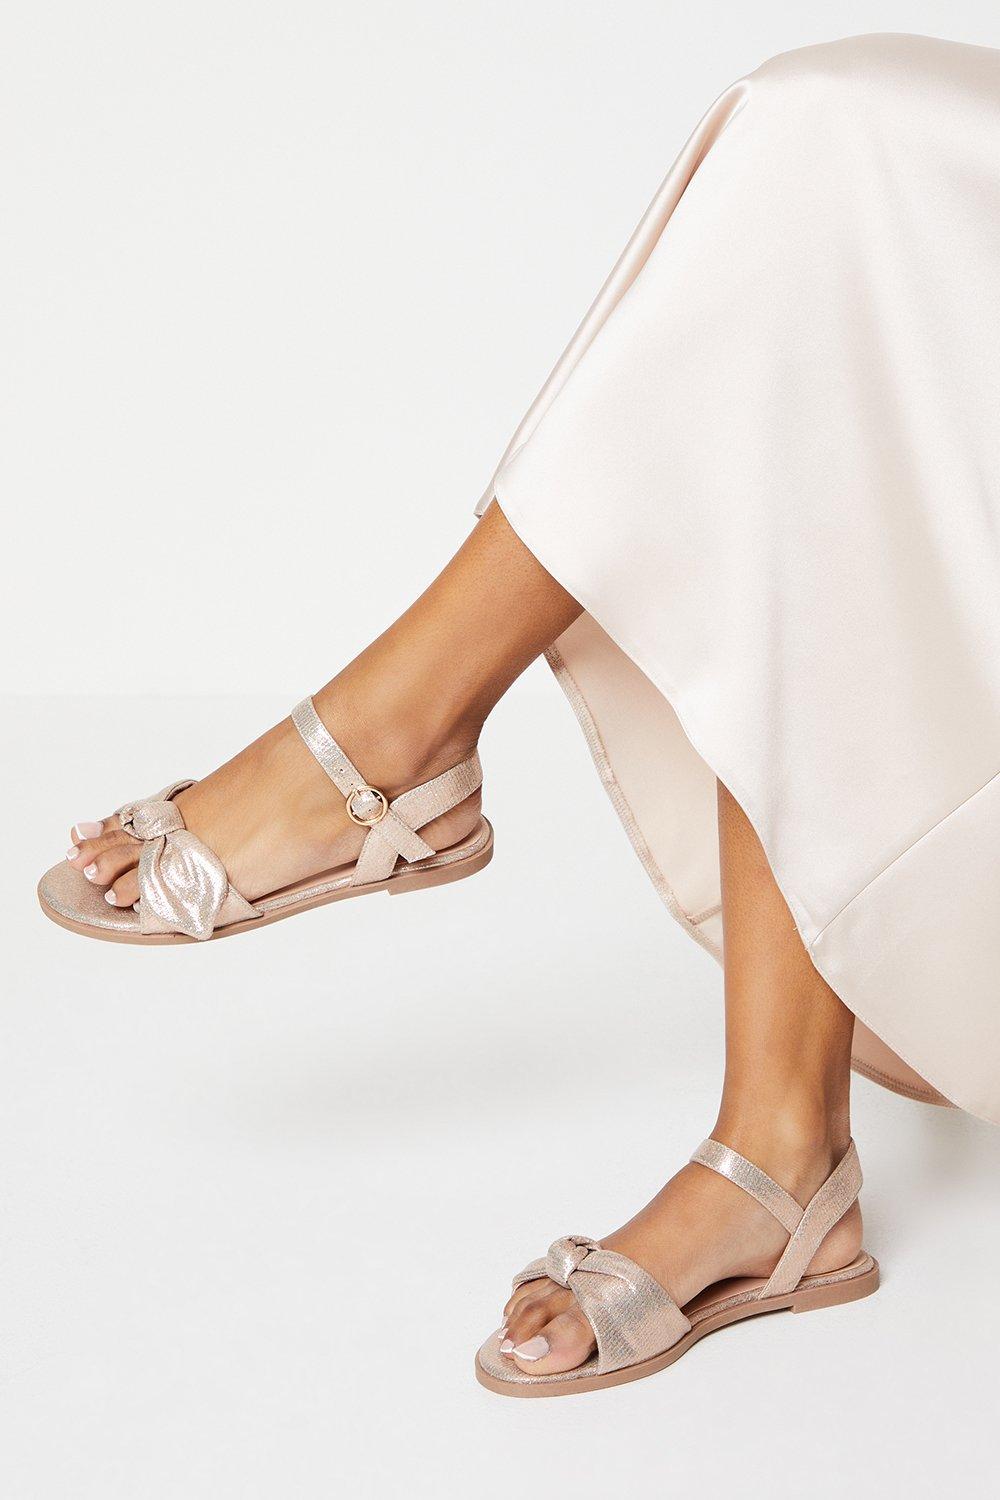 Women's Freya Bow Flat Sandals - rose gold - 6